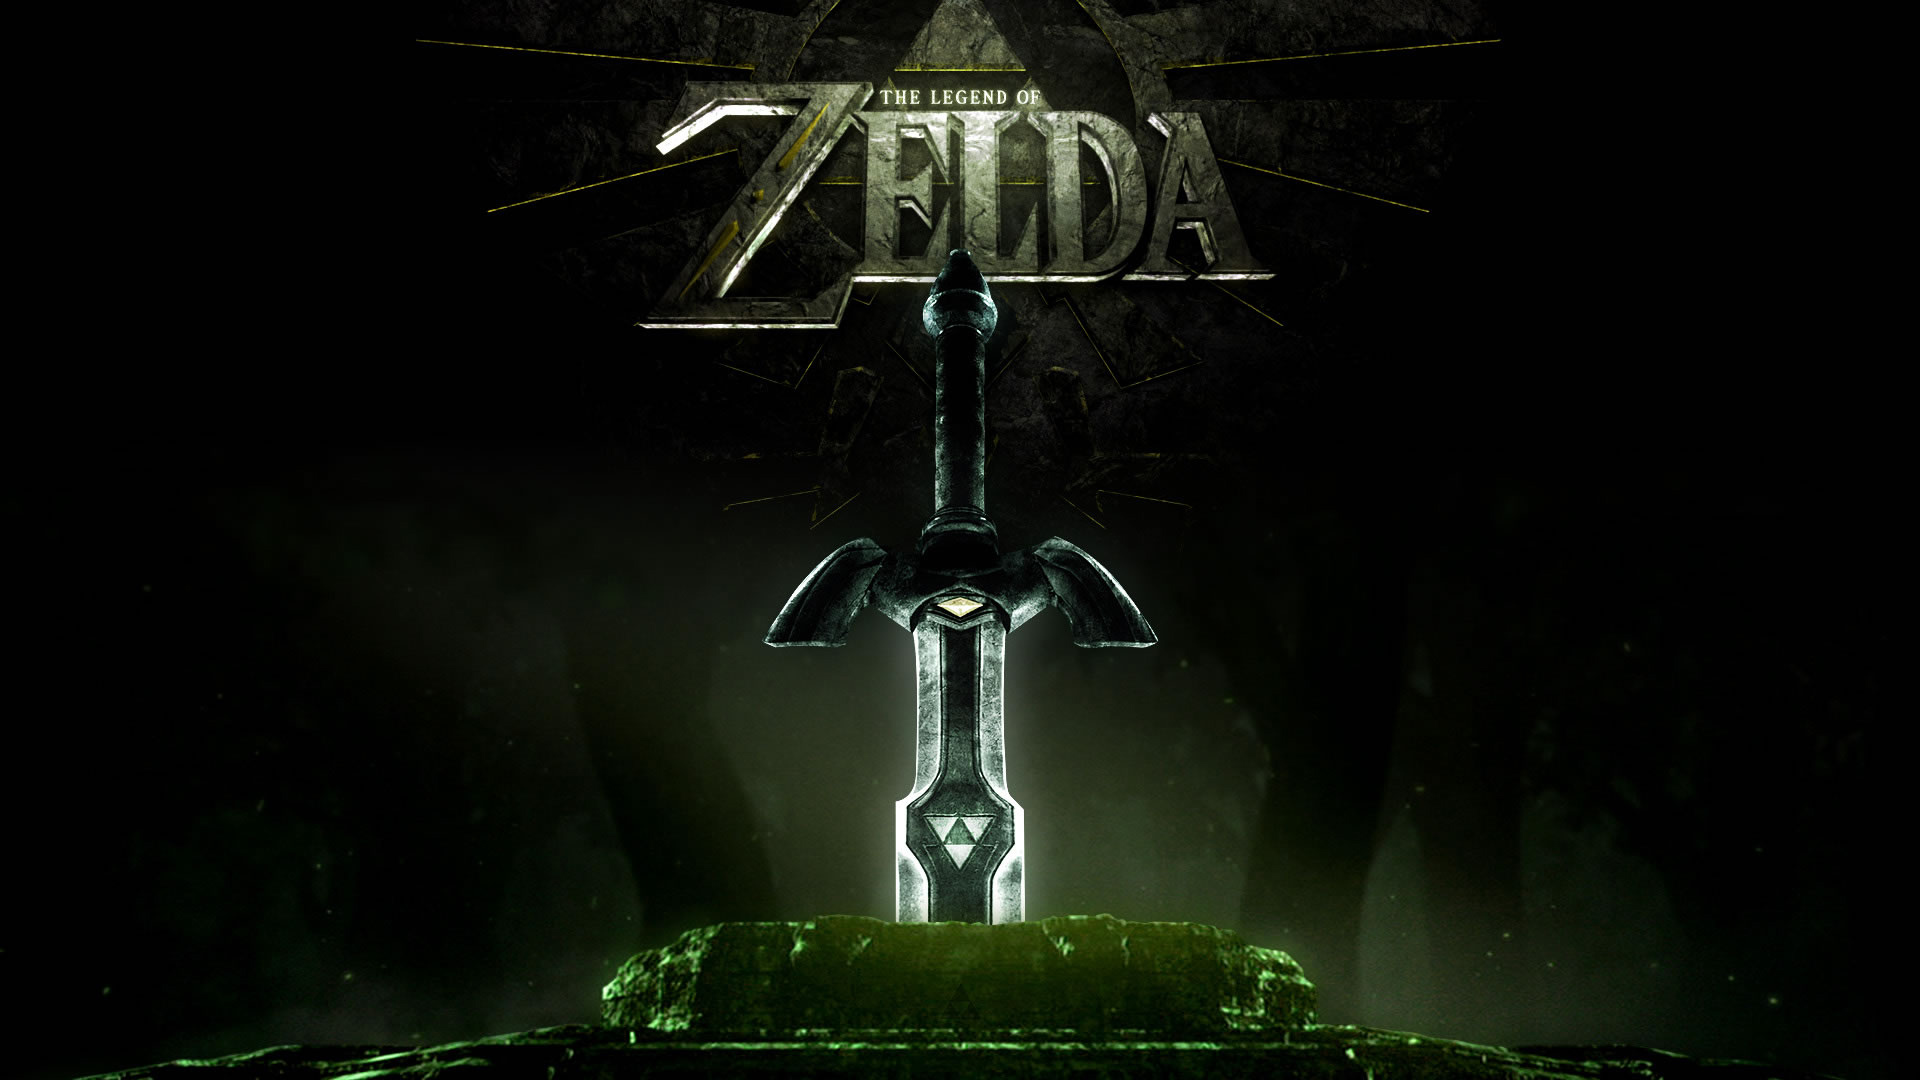 The Legend Of Zelda - Legend Of Zelda - HD Wallpaper 